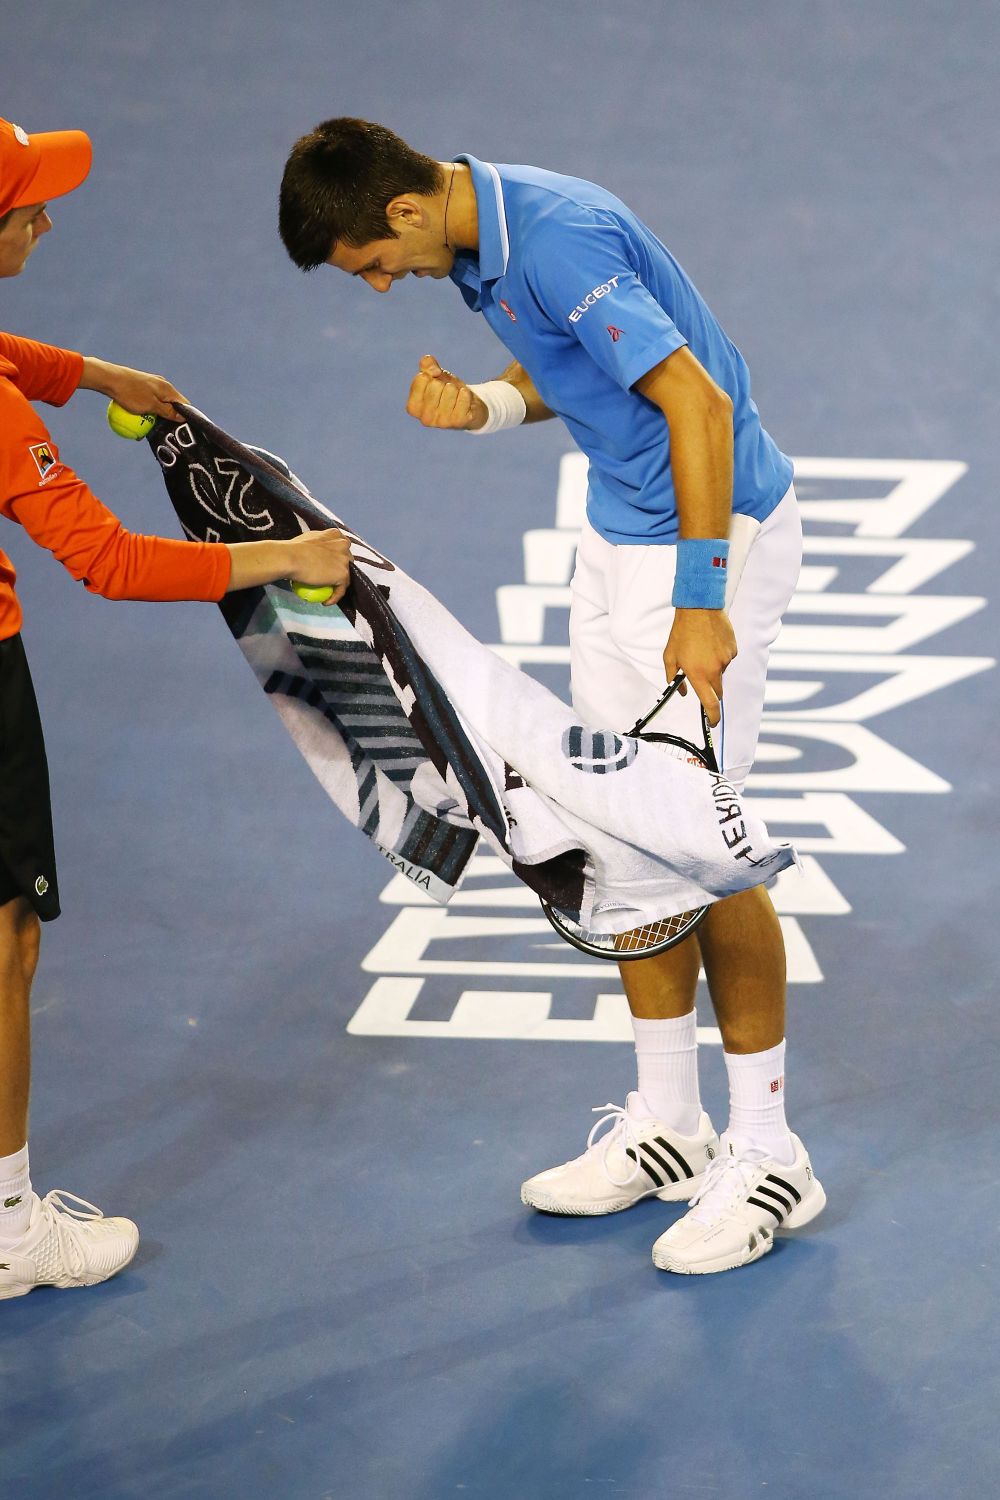 Djokovici a castigat finala Australian Open: 7-6, 6-7, 6-3, 6-0 in fata lui Murray! A 4-a finala pierduta de britanic la Melbourne_8